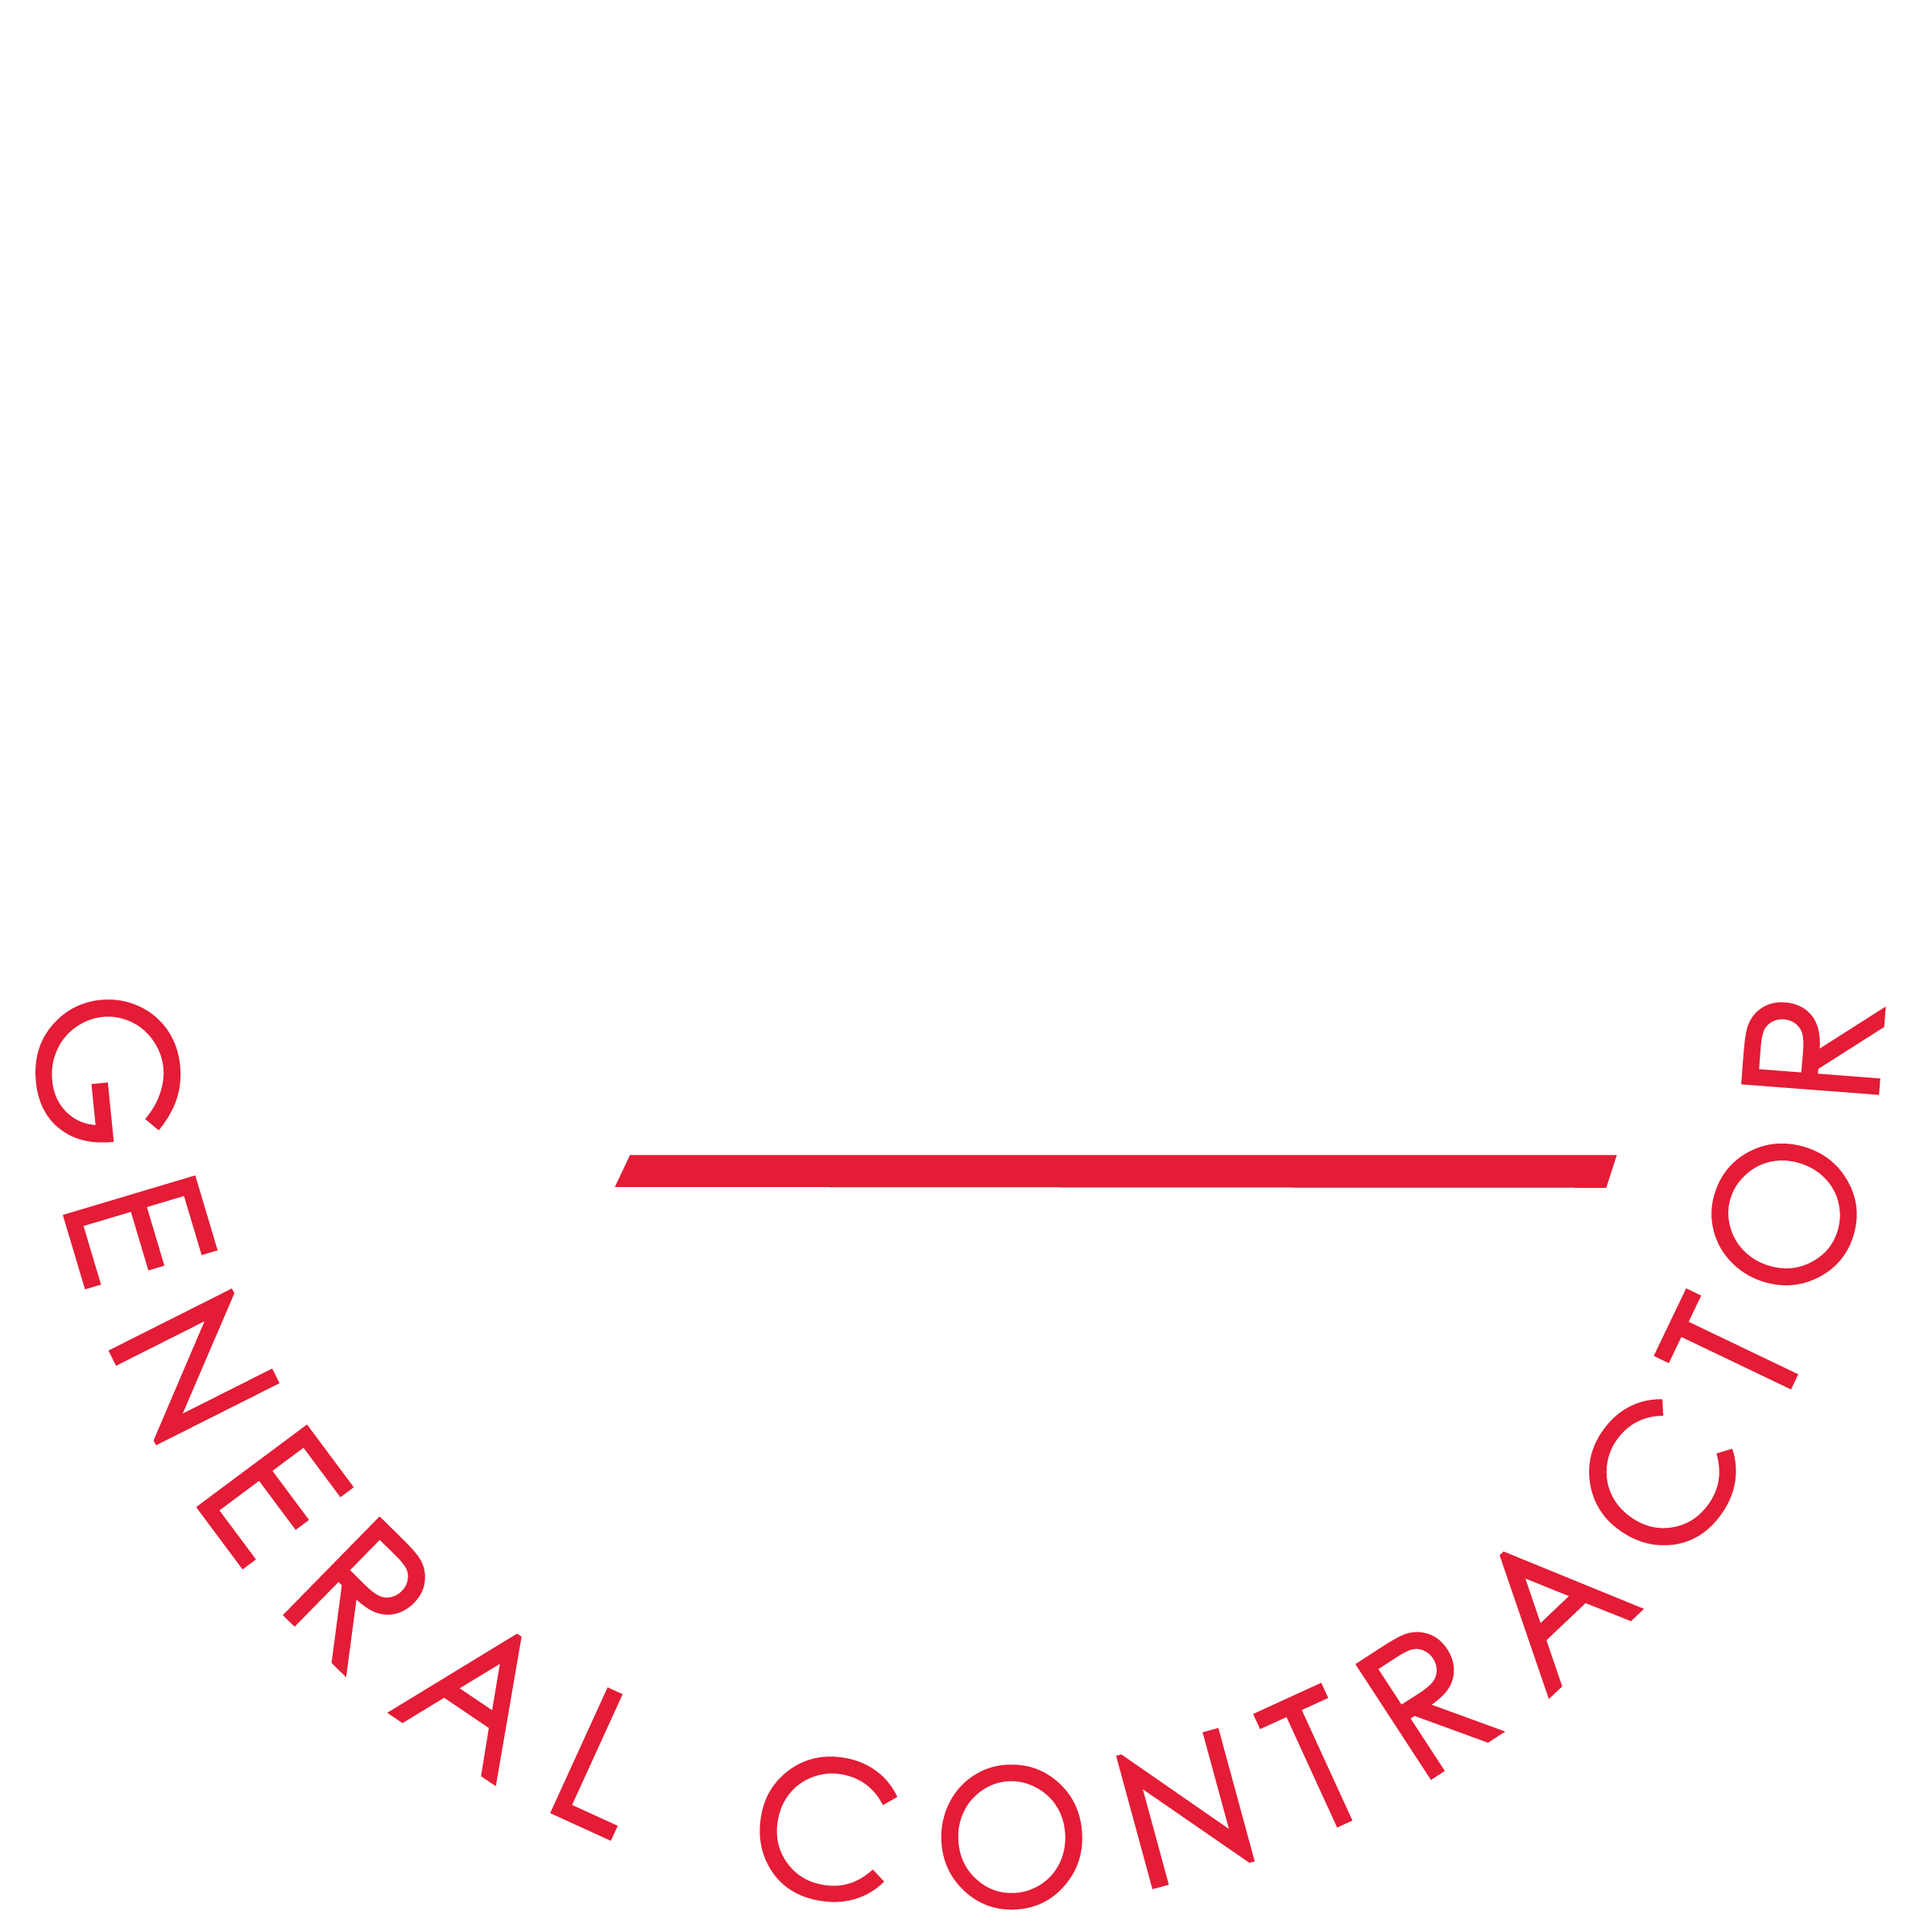 A.C. Enterprises